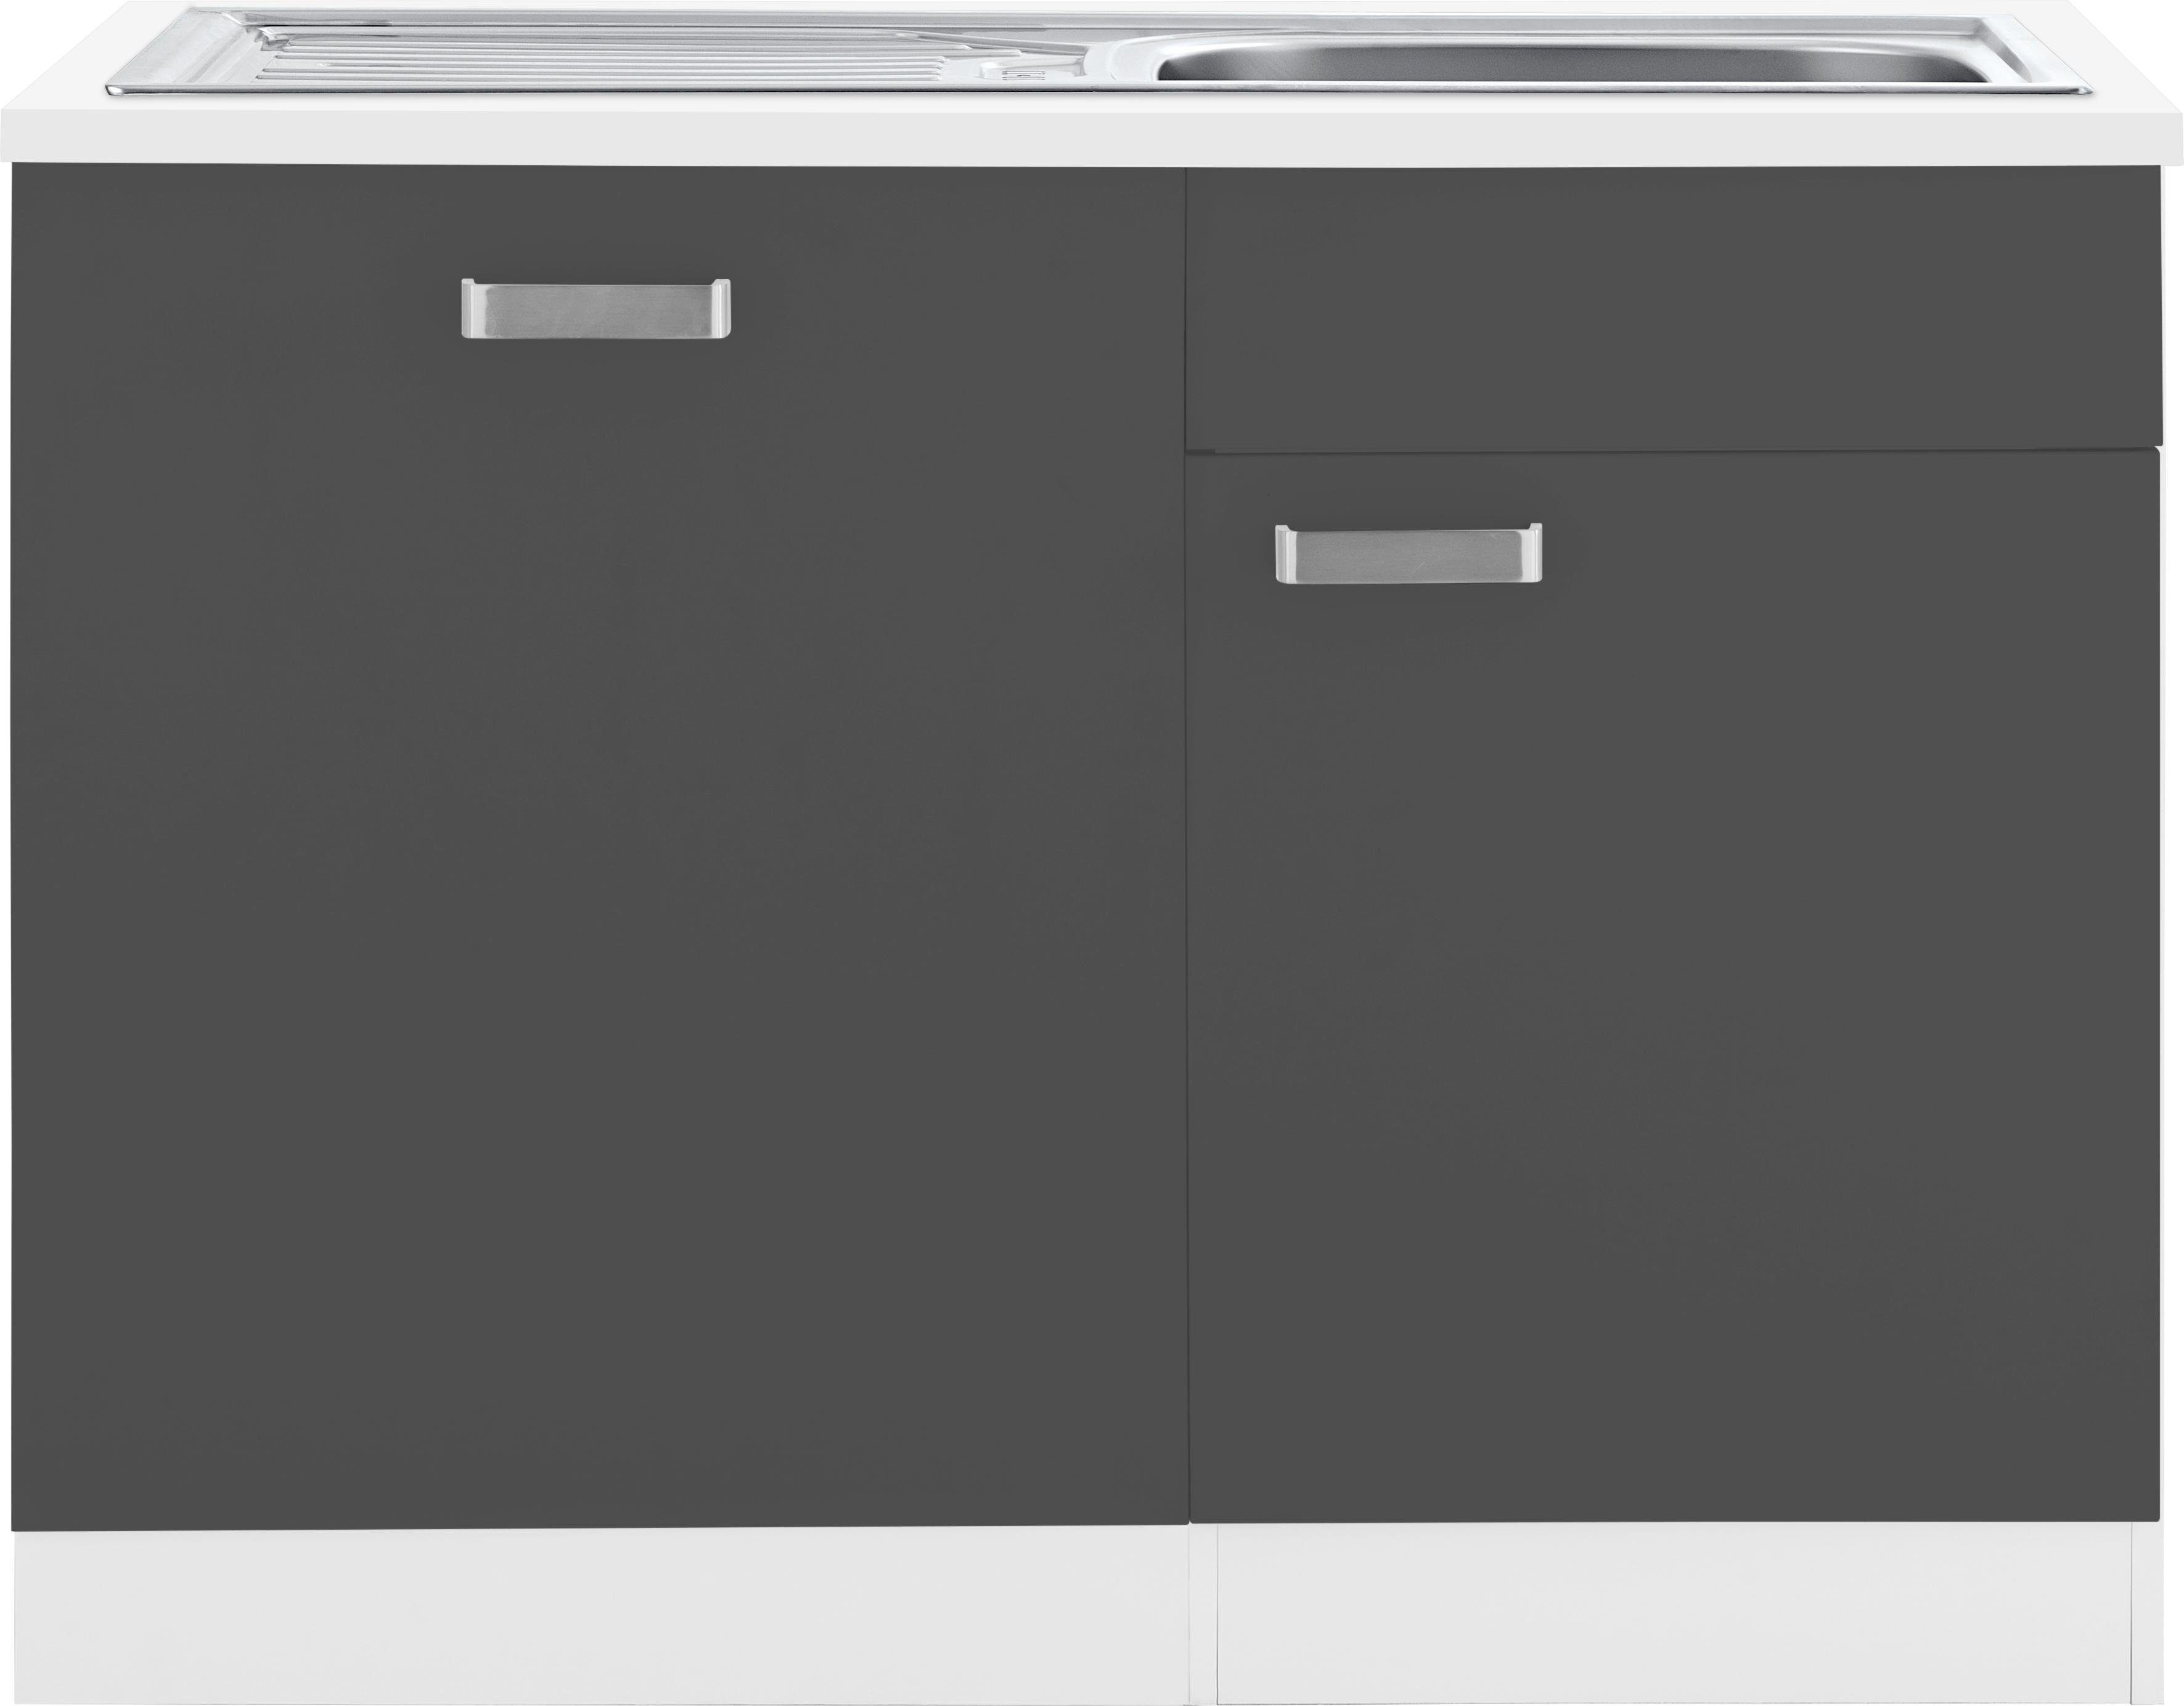 wiho Küchen Spülenschrank Husum 110 cm breit, inkl. Tür/Sockel für Geschirrspüler anthrazit/weiß